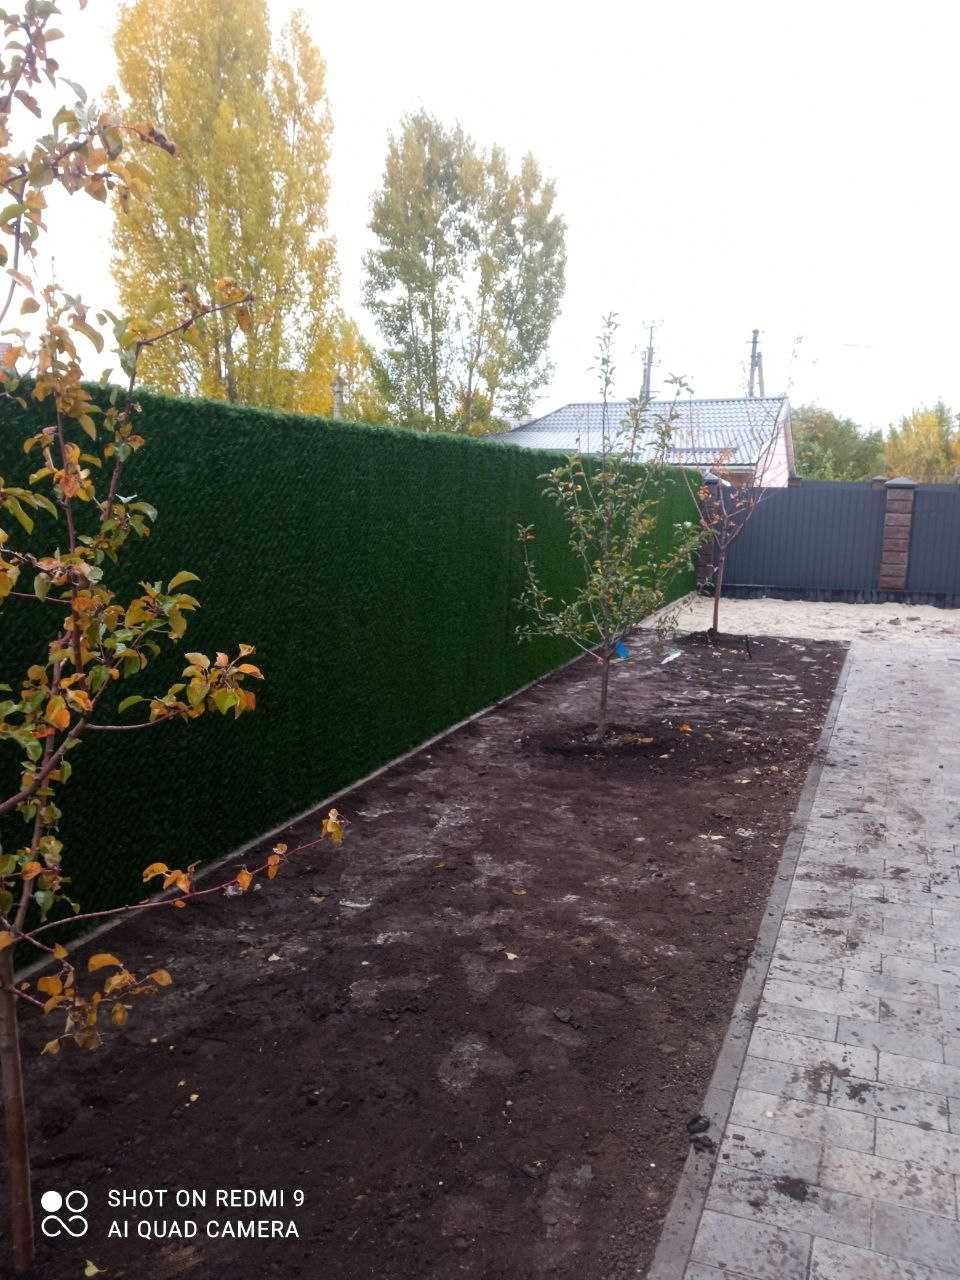 Зелений паркан Co-Group змішаного кольору H-2.0м х 10м в рулоні